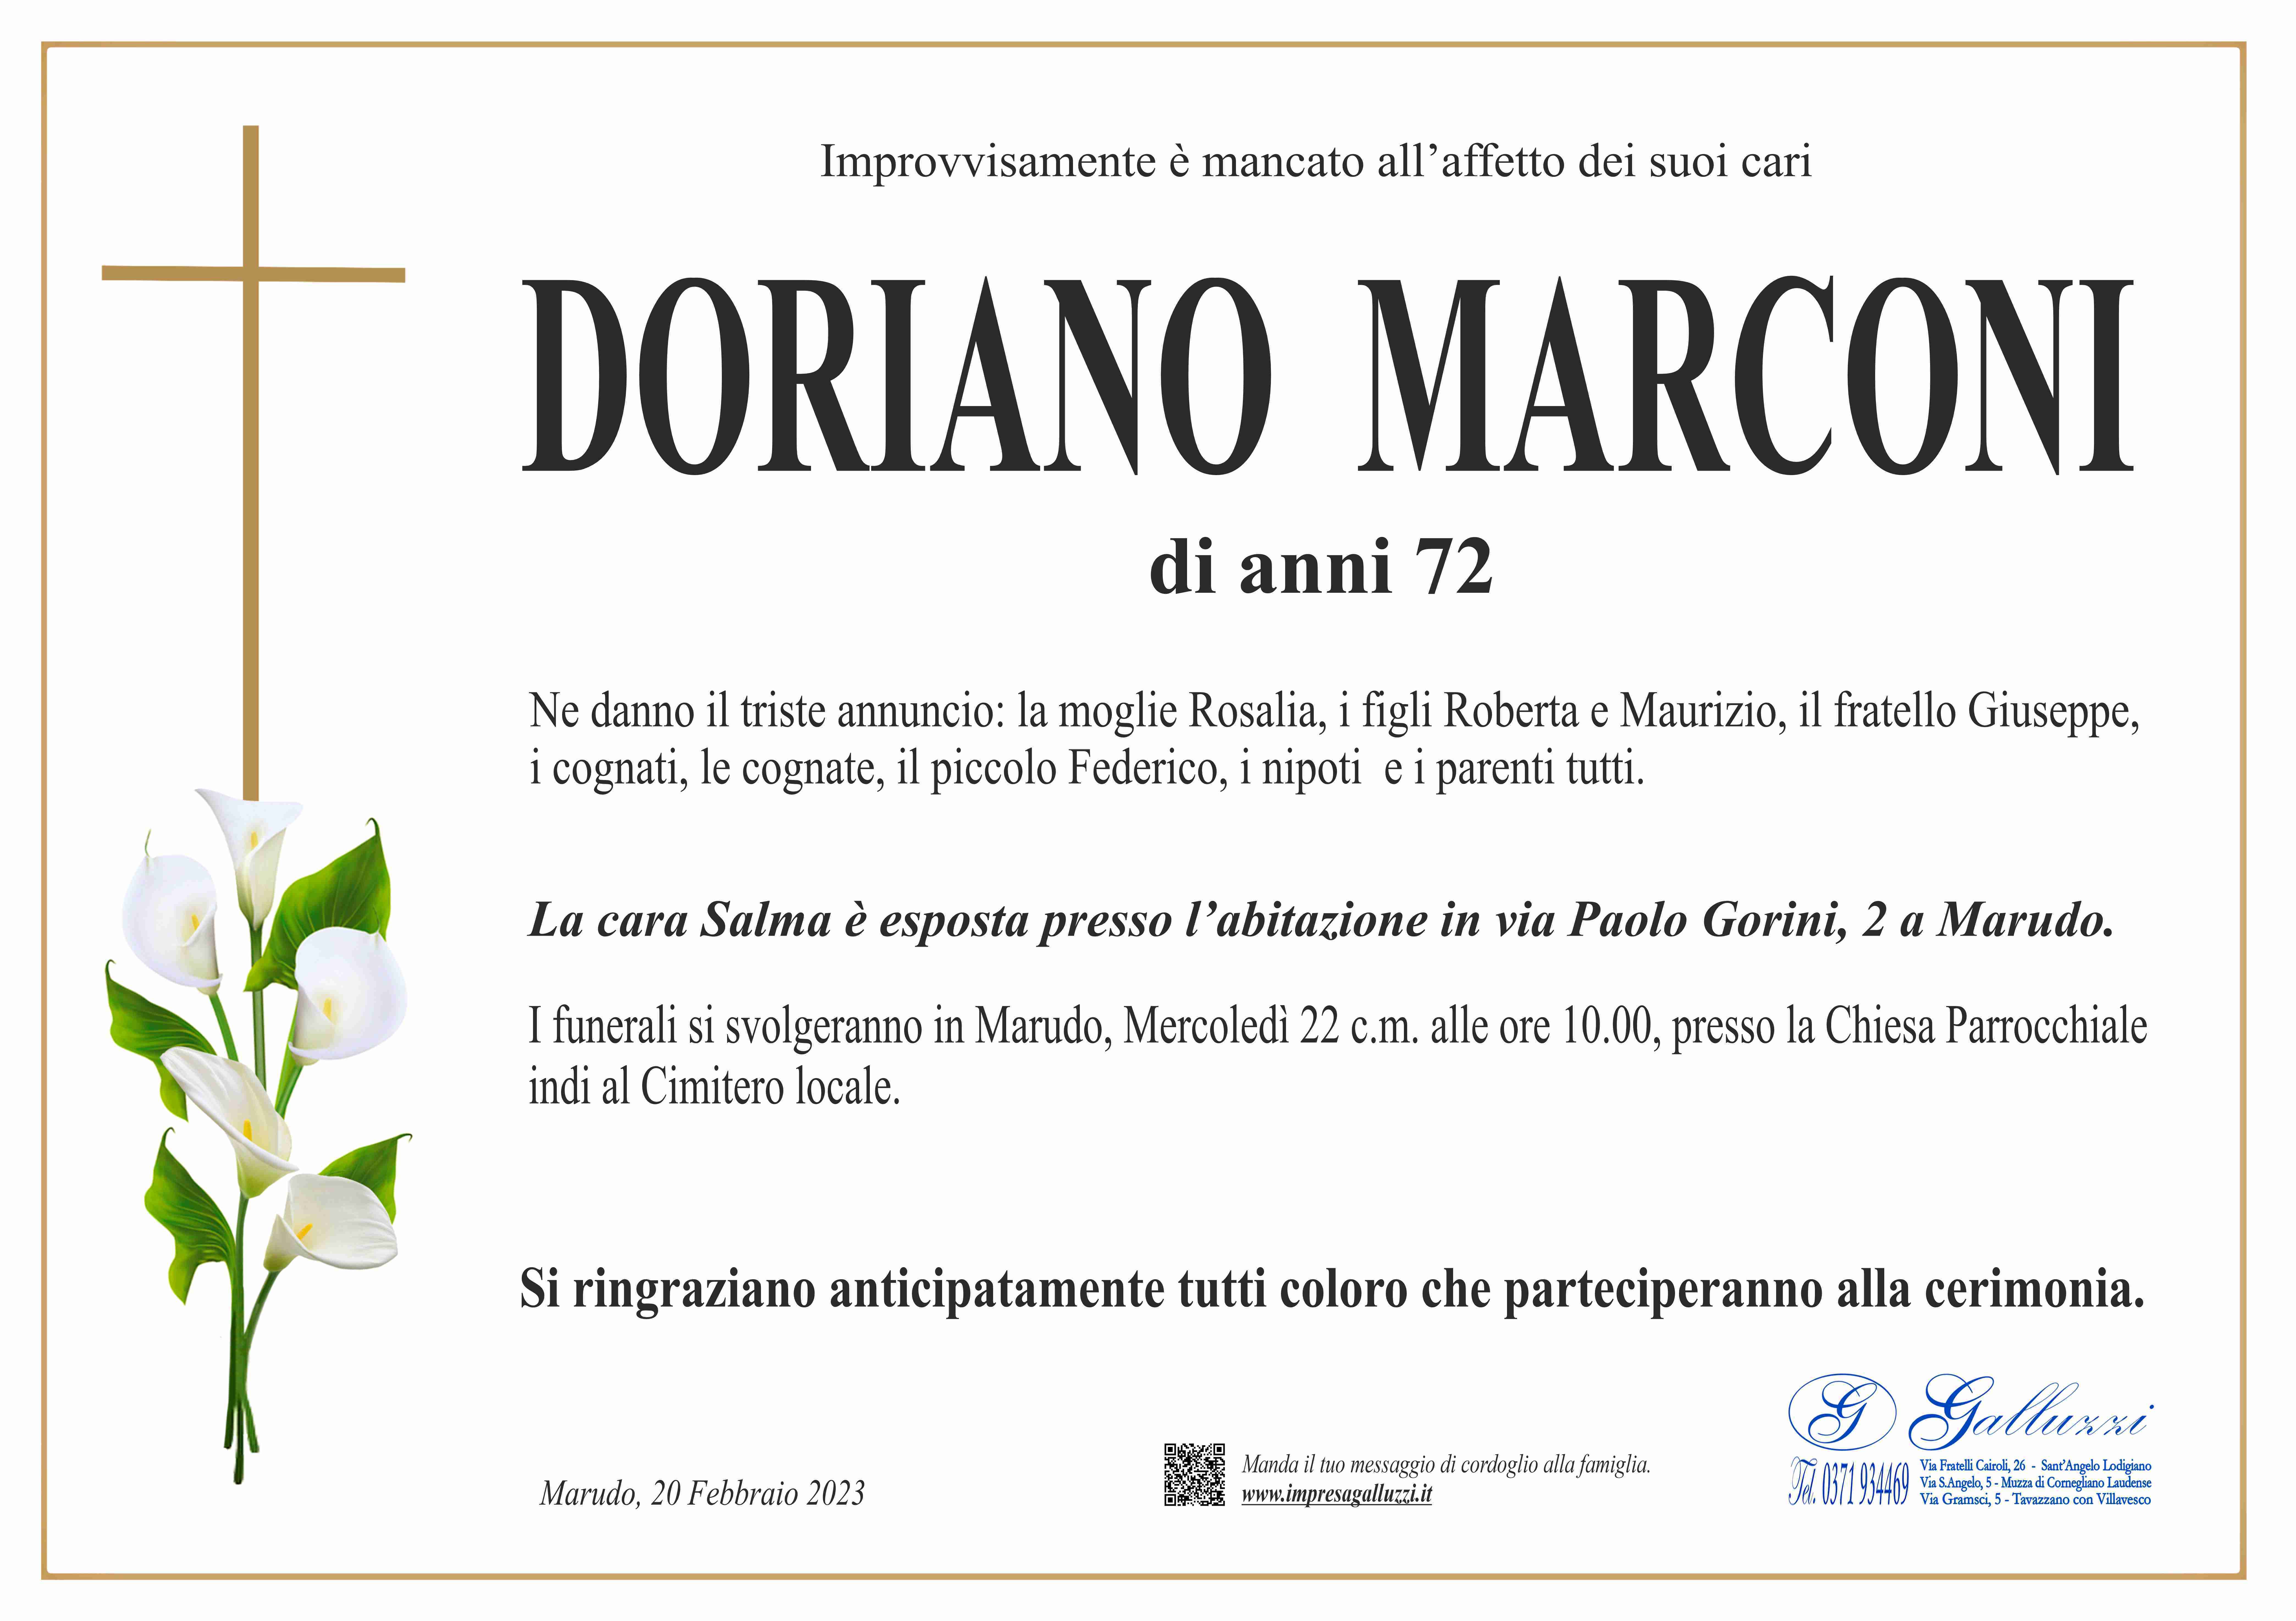 Doriano Marconi